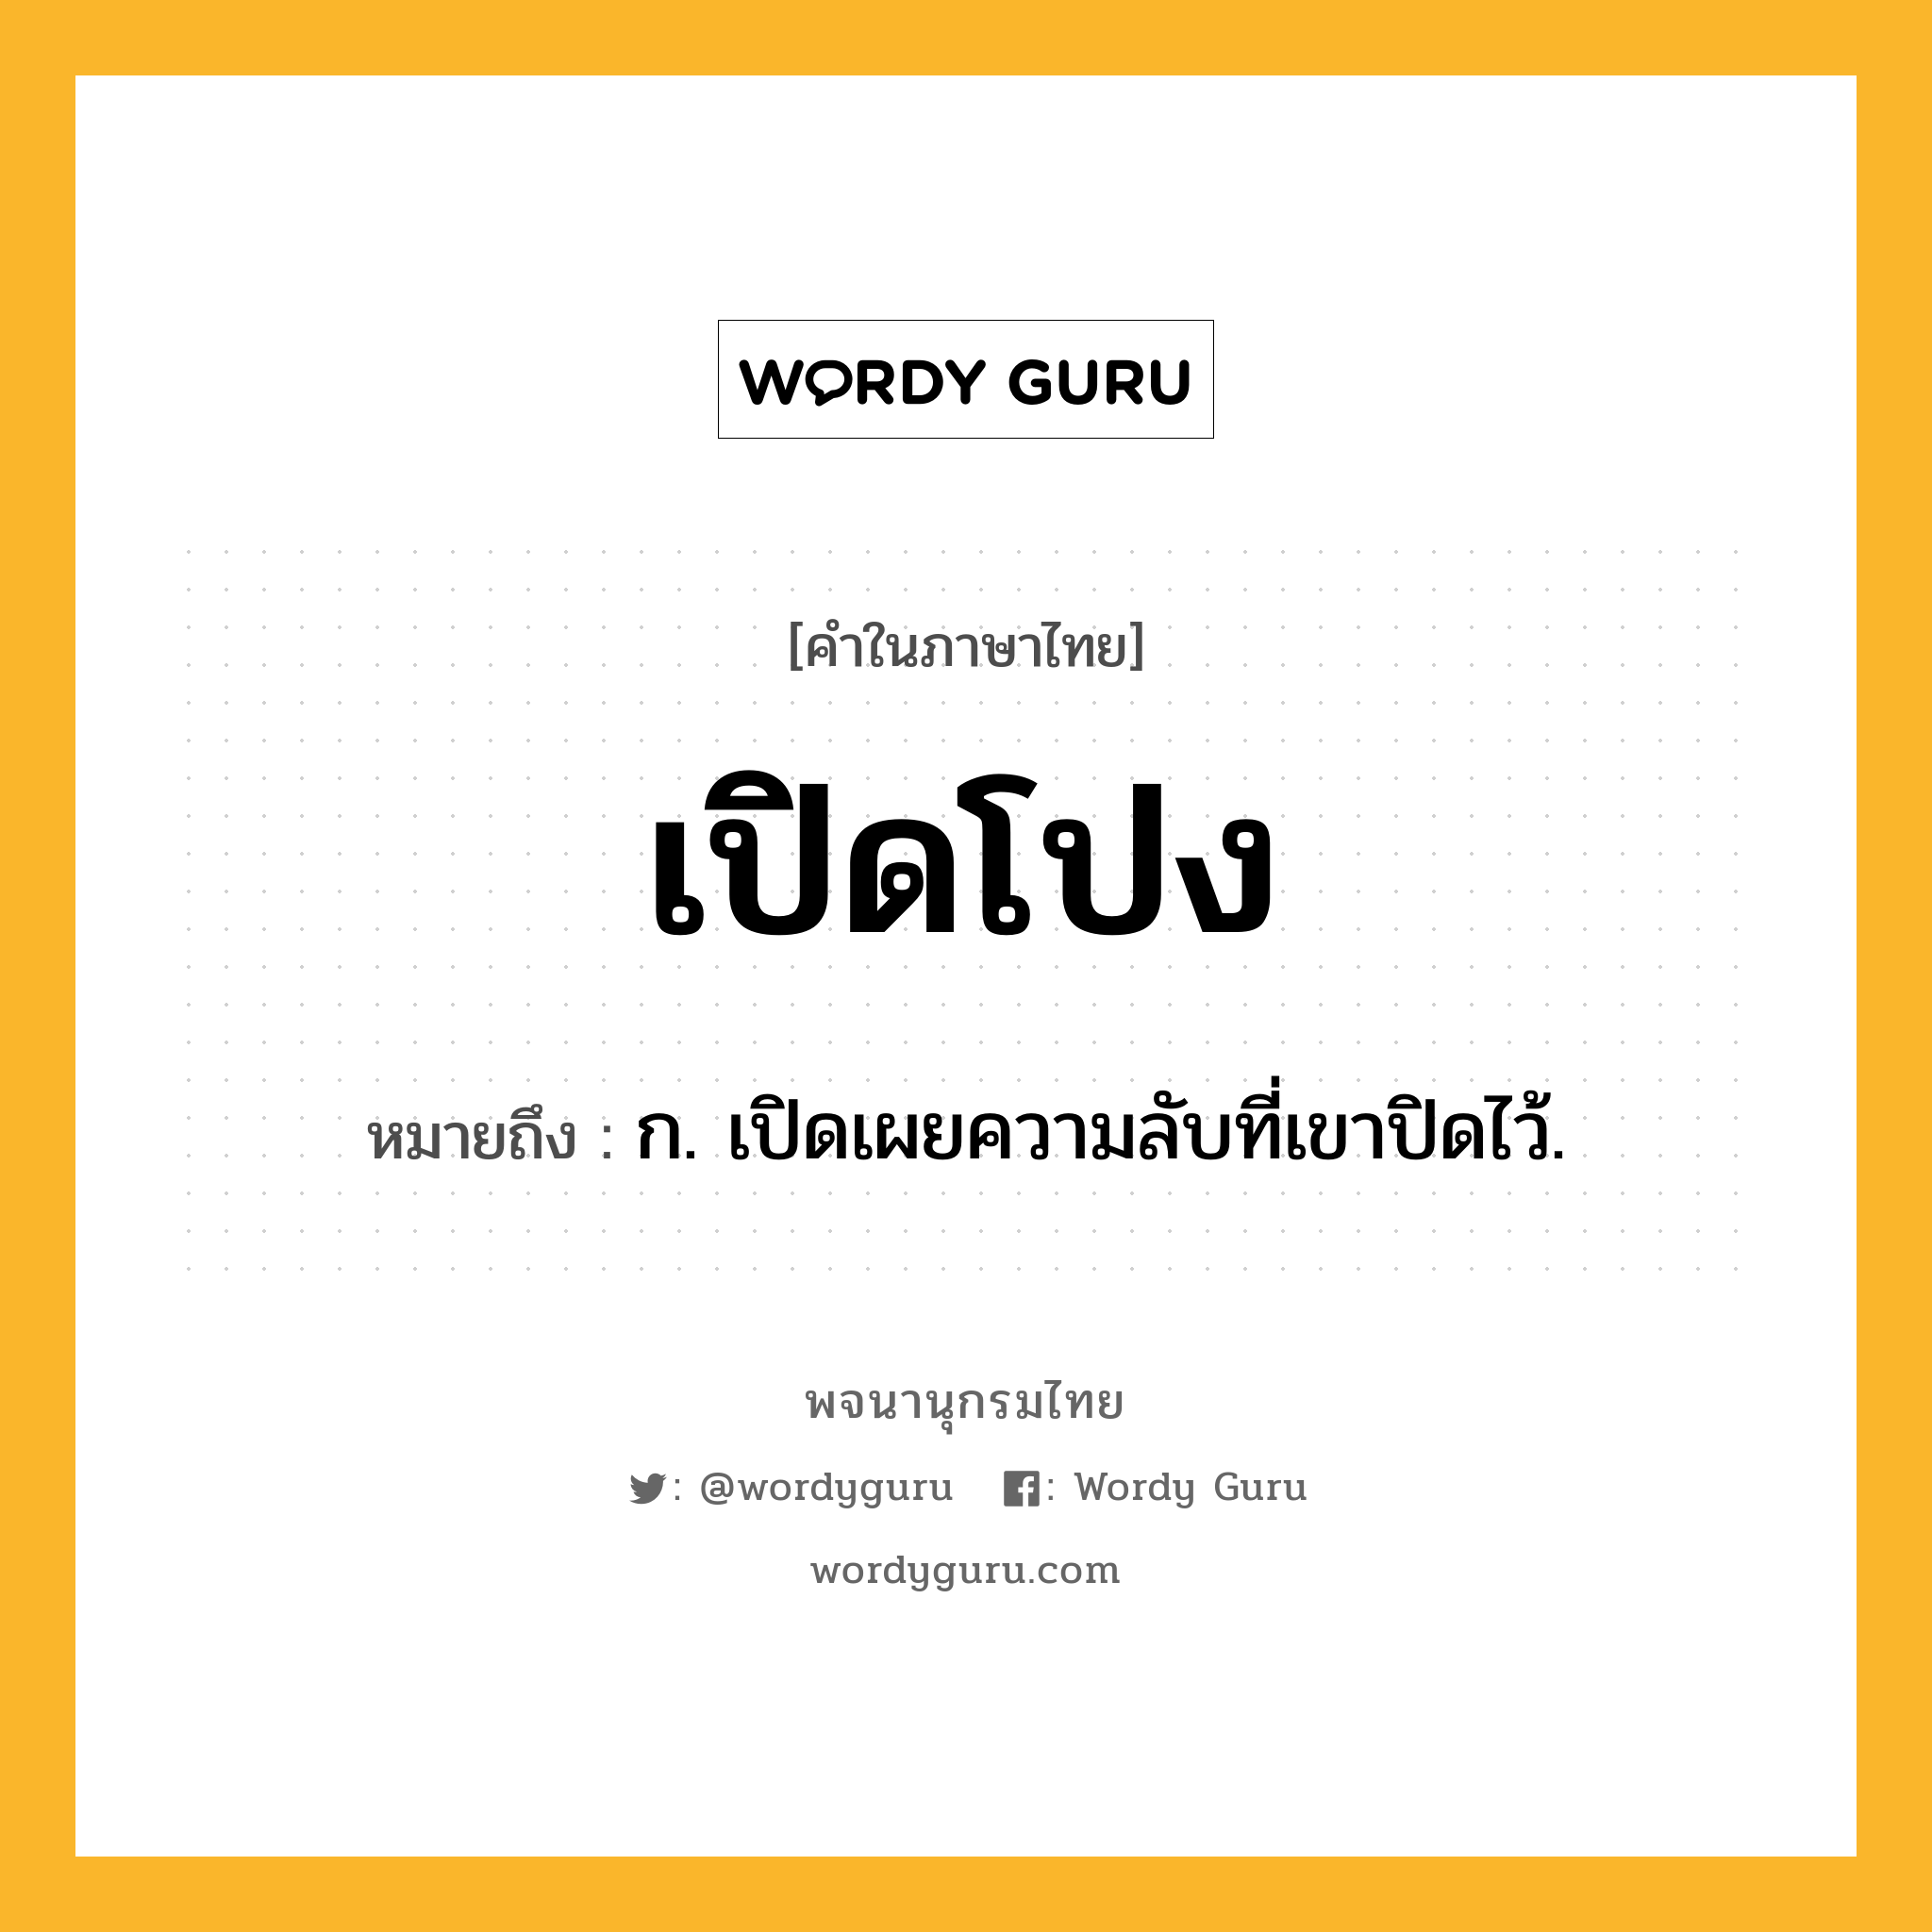 เปิดโปง หมายถึงอะไร?, คำในภาษาไทย เปิดโปง หมายถึง ก. เปิดเผยความลับที่เขาปิดไว้.